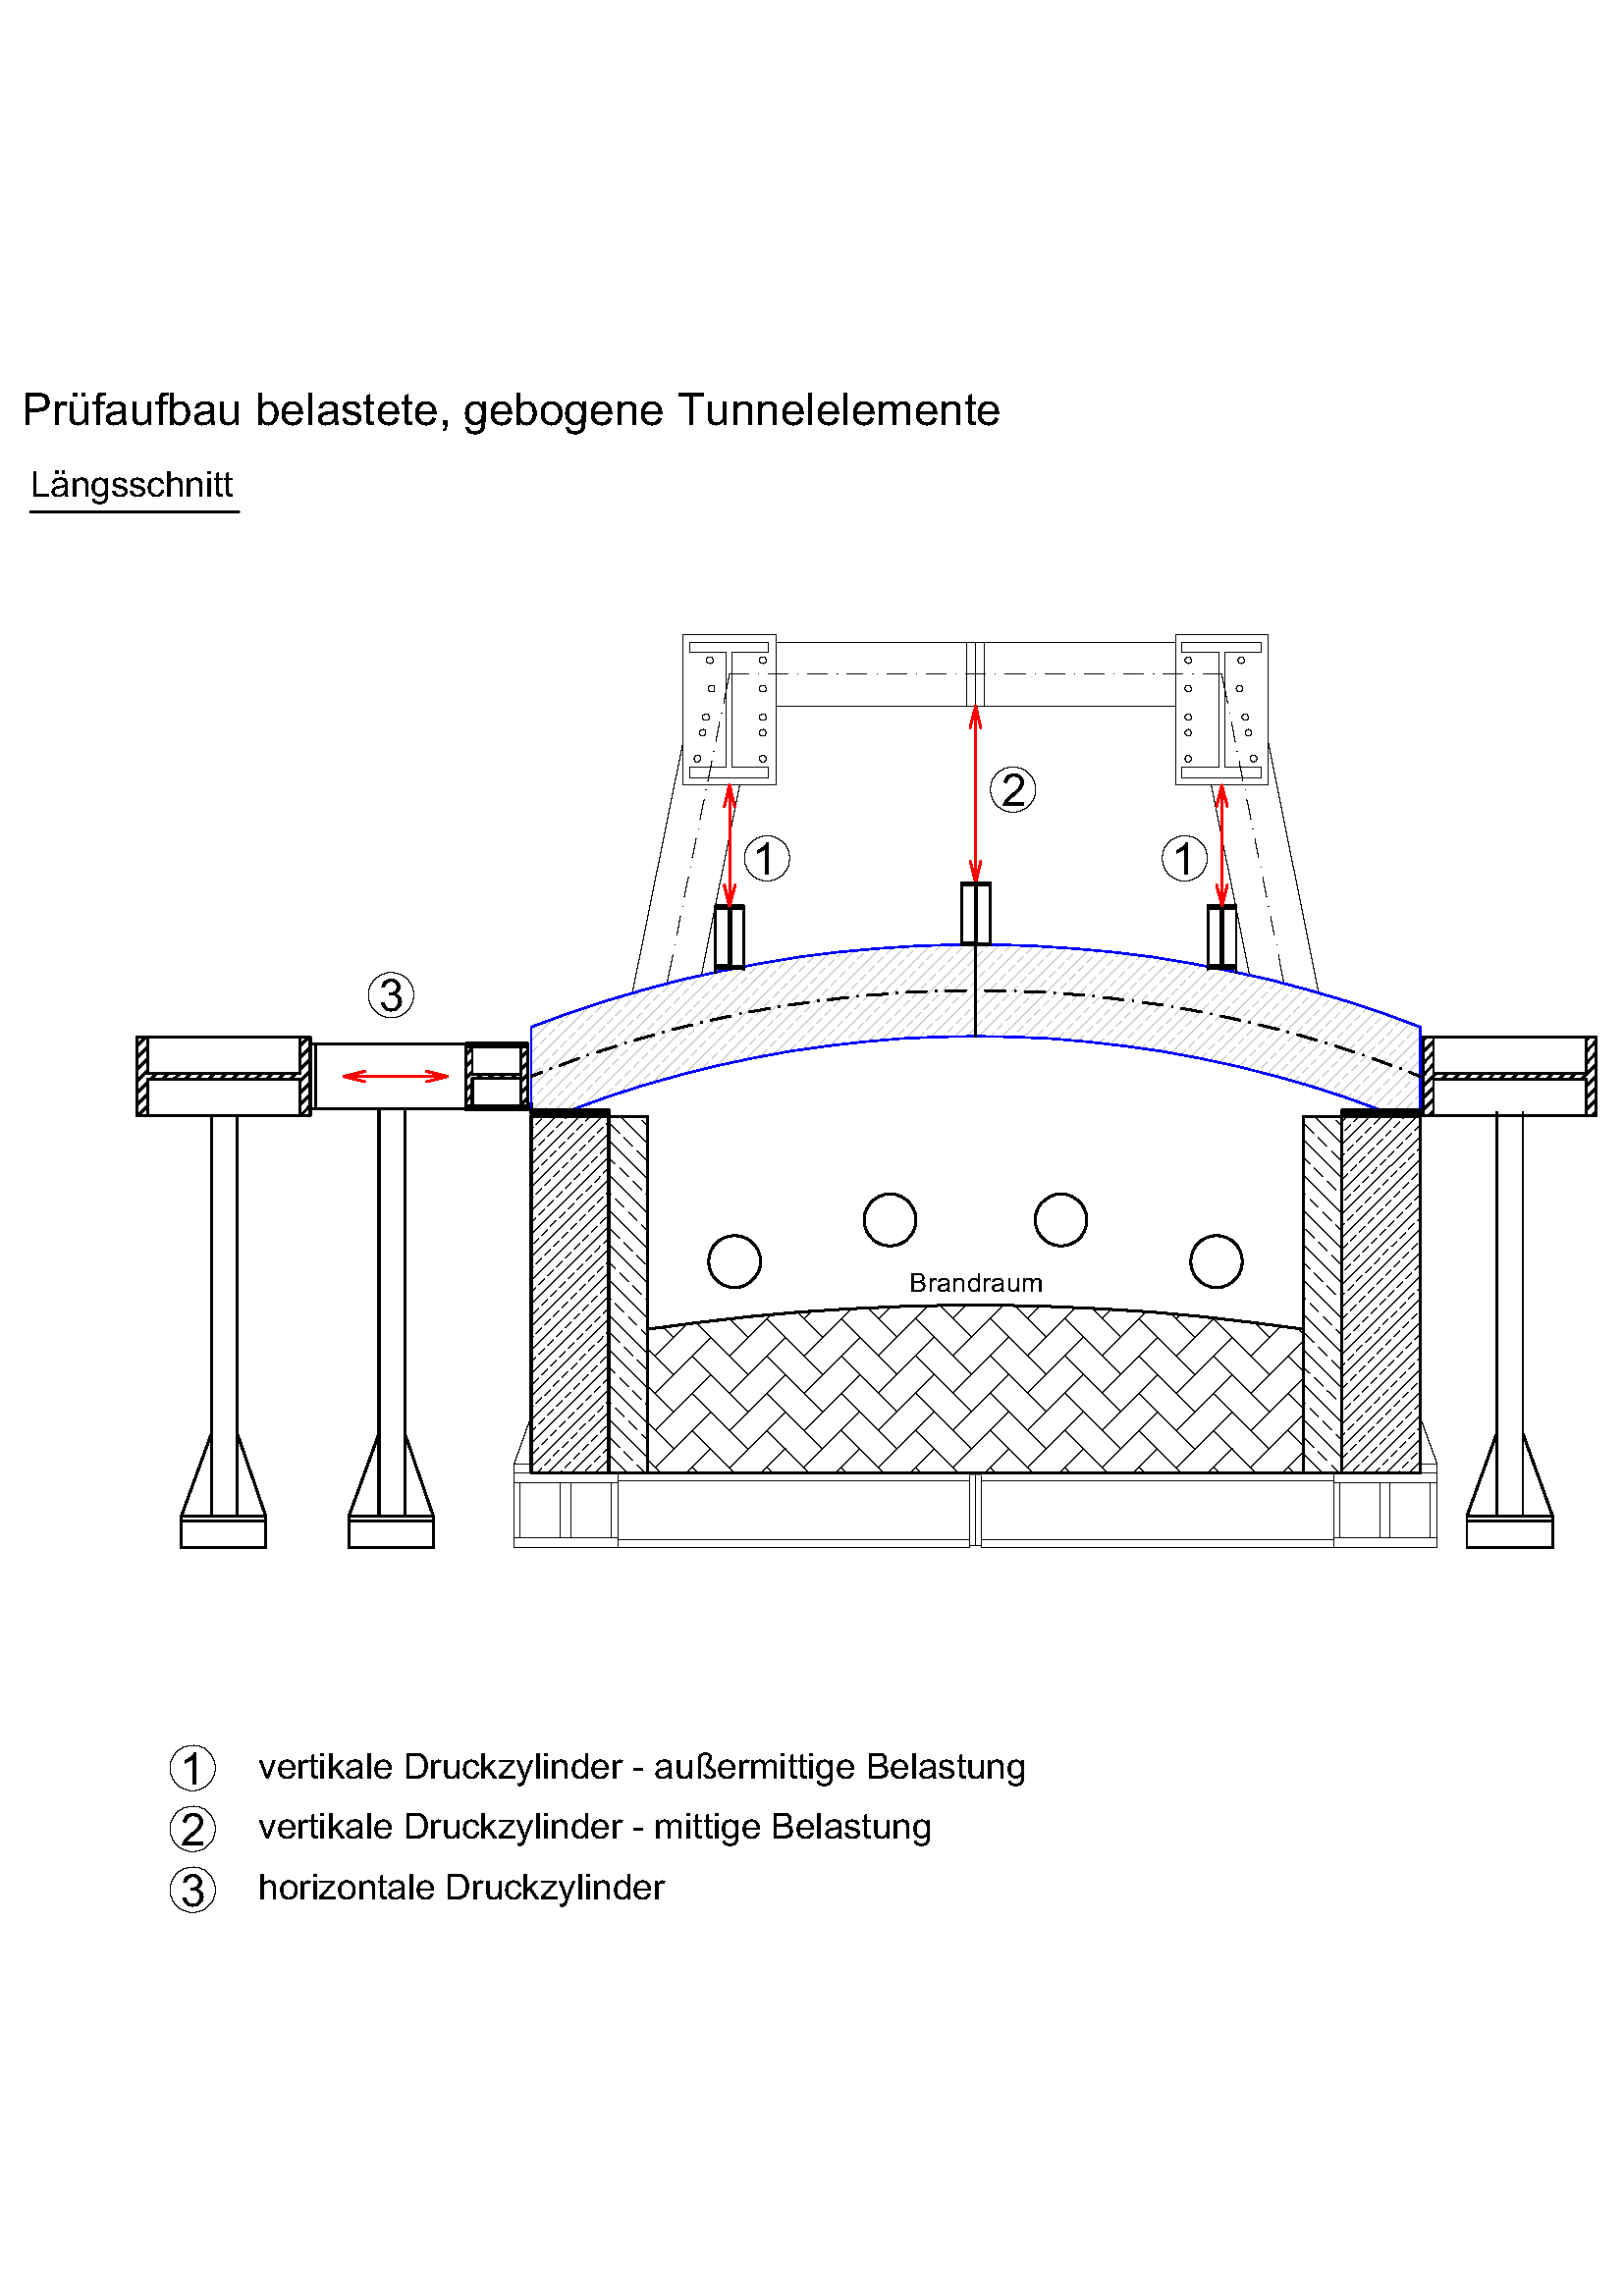 Längsschnitt des Prüfaufbaus belasteter und gebogener Tunnelelement zum Einbau im Prüfofen mit vertikaler und horizontaler Belastung